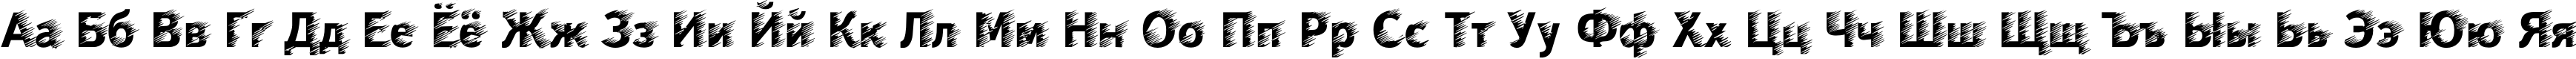 Пример написания русского алфавита шрифтом WindC